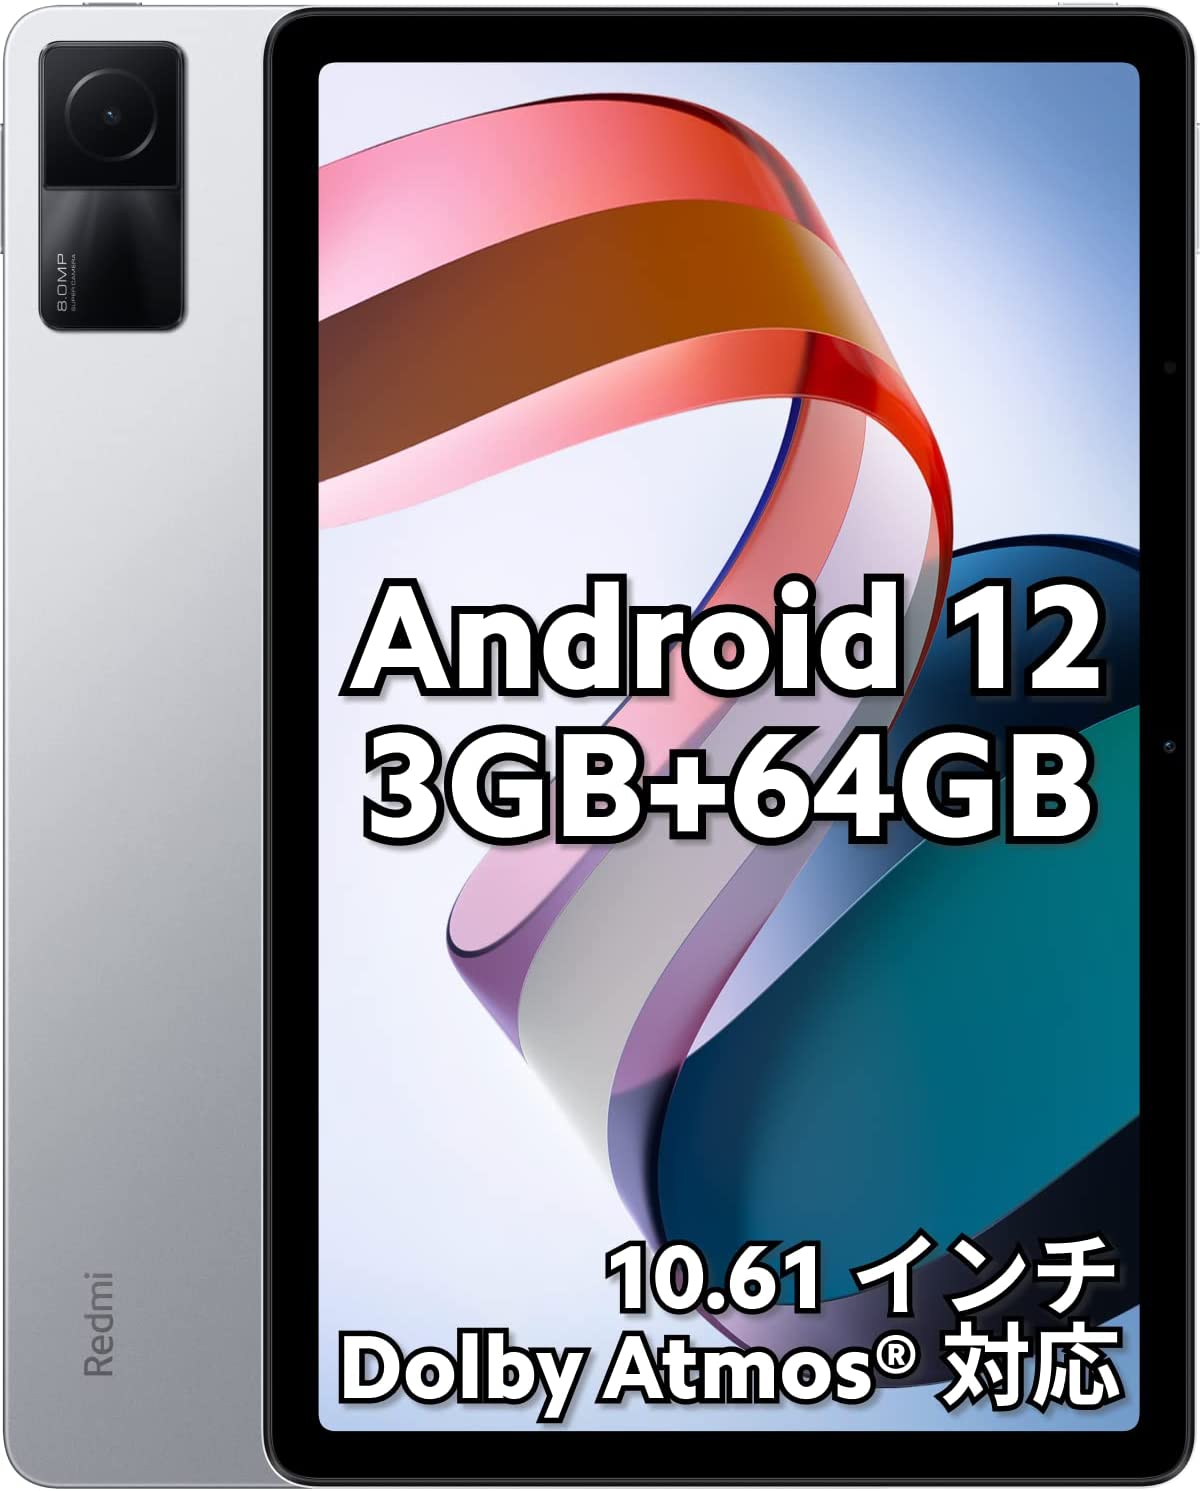 シャオミ(Xiaomi) タブレット Redmi Pad 3GB 64GB 日本語版 10.61インチディスプレ wi-fiモデル Dolby Atmos 対応 18W急速充電 8,000mAh大容量バッテリー 軽量 ムーンライトシルバー